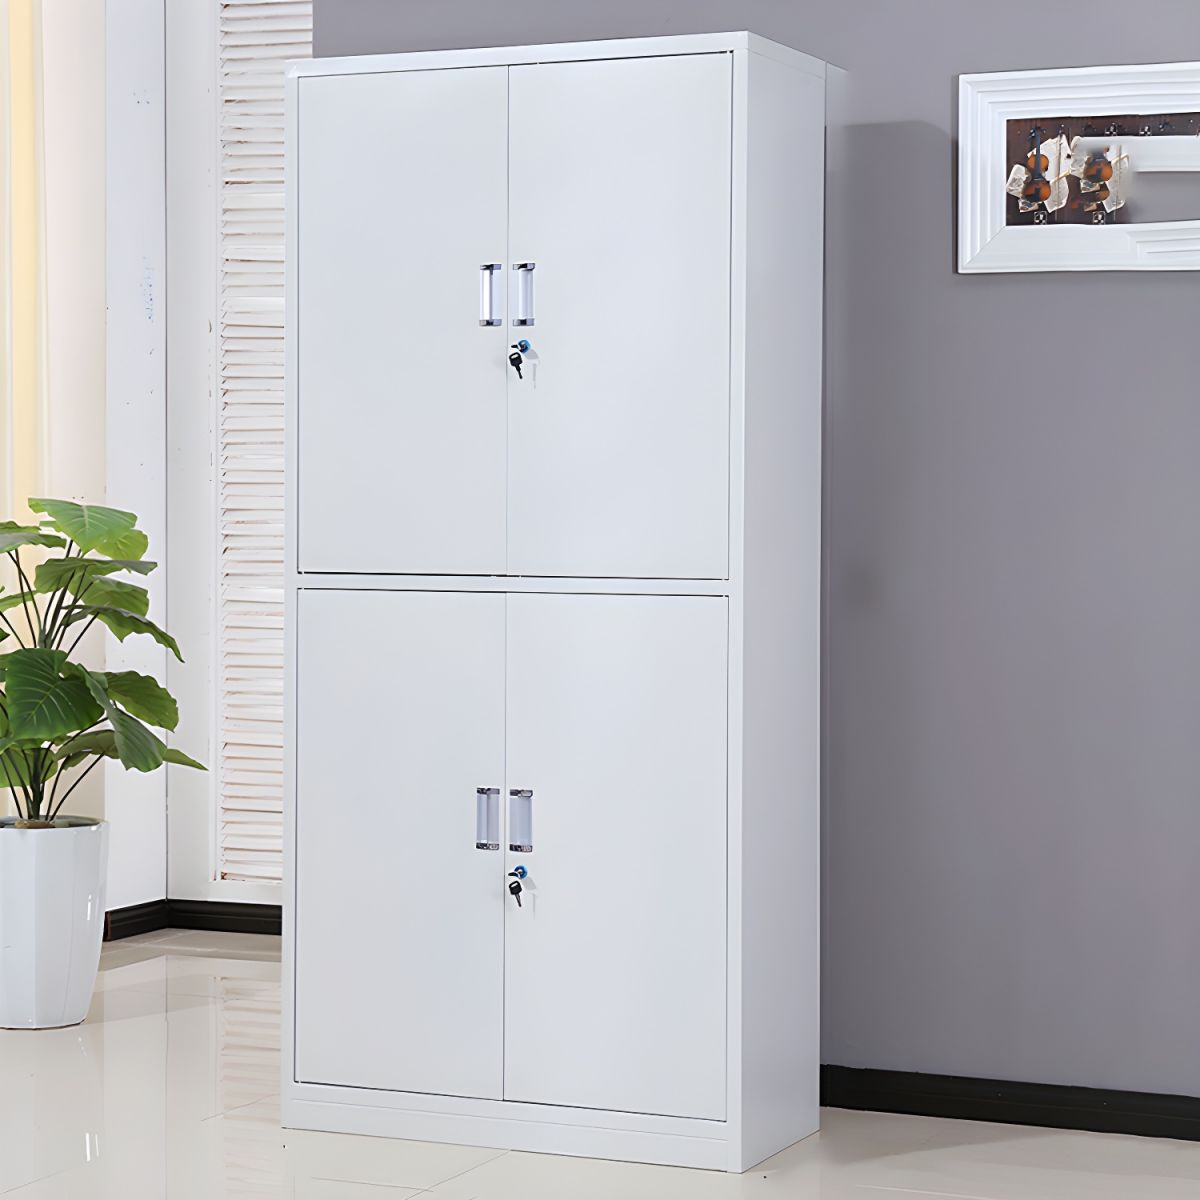 Vertical Metallic Storage Cabinet